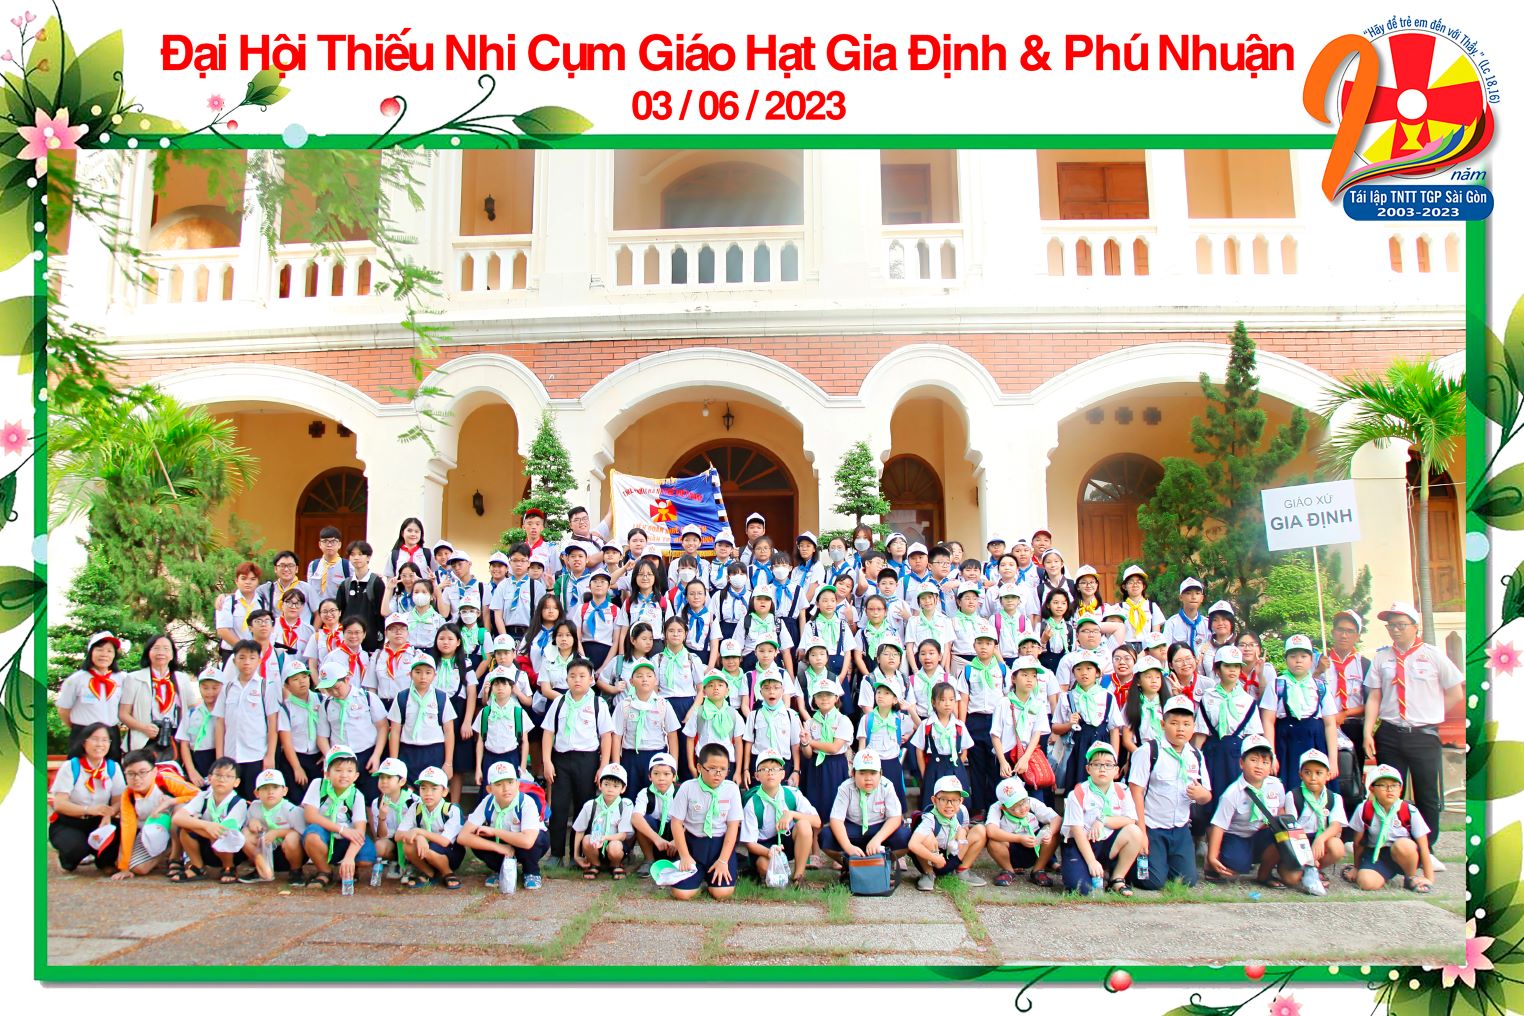 Đại hội Thiếu nhi Giáo hạt Gia Định & Phú Nhuận ngày 3-6-2023